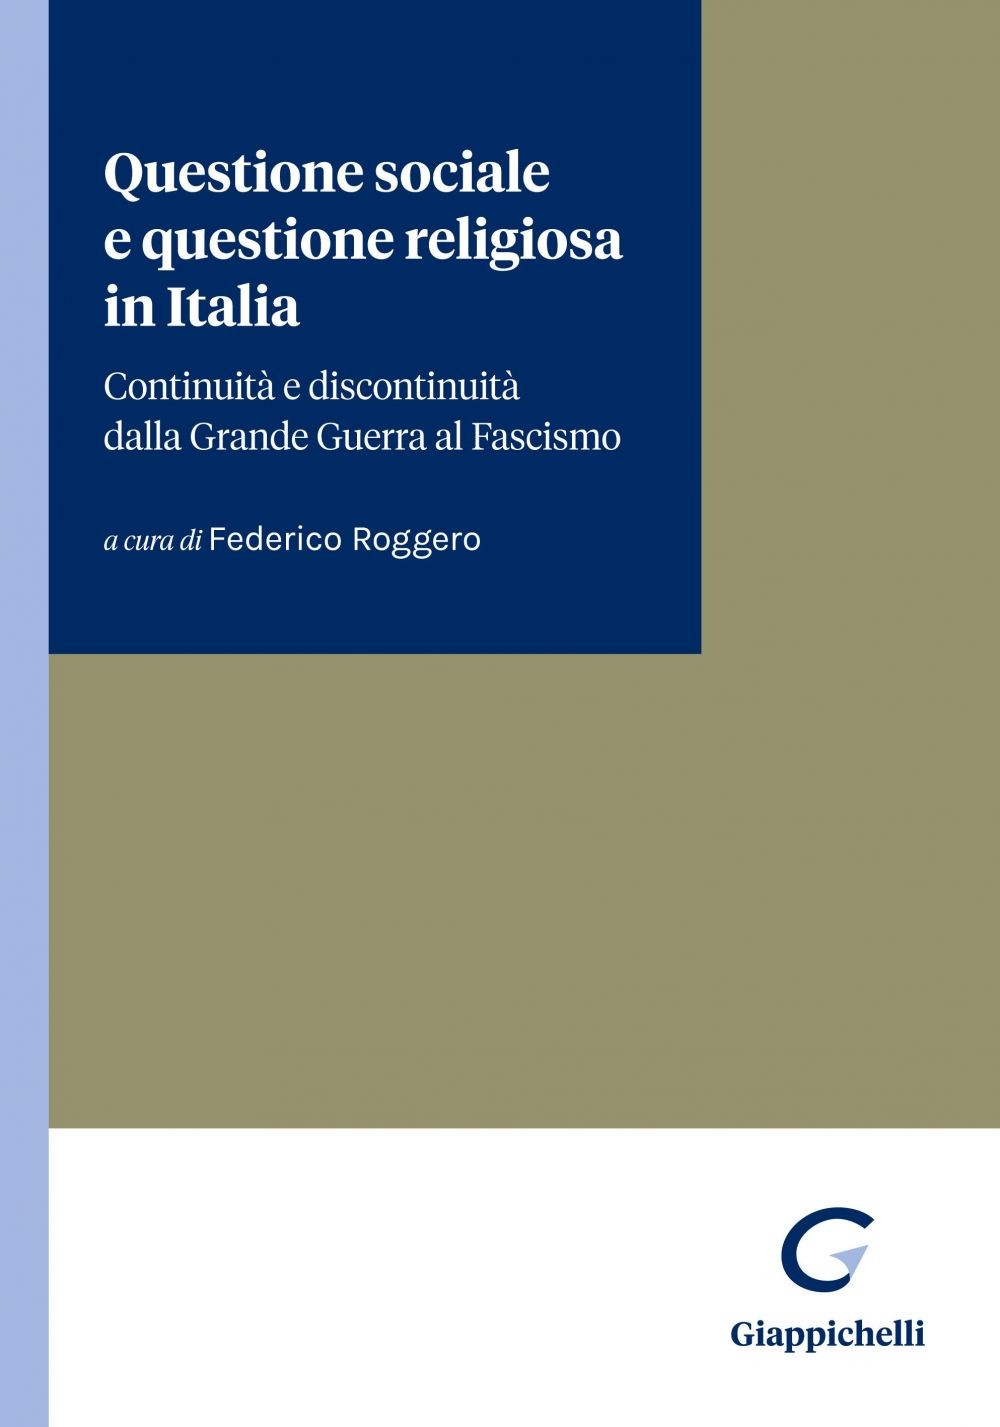 Questione sociale e questione religiosa in Italia - e-book - Librerie.coop